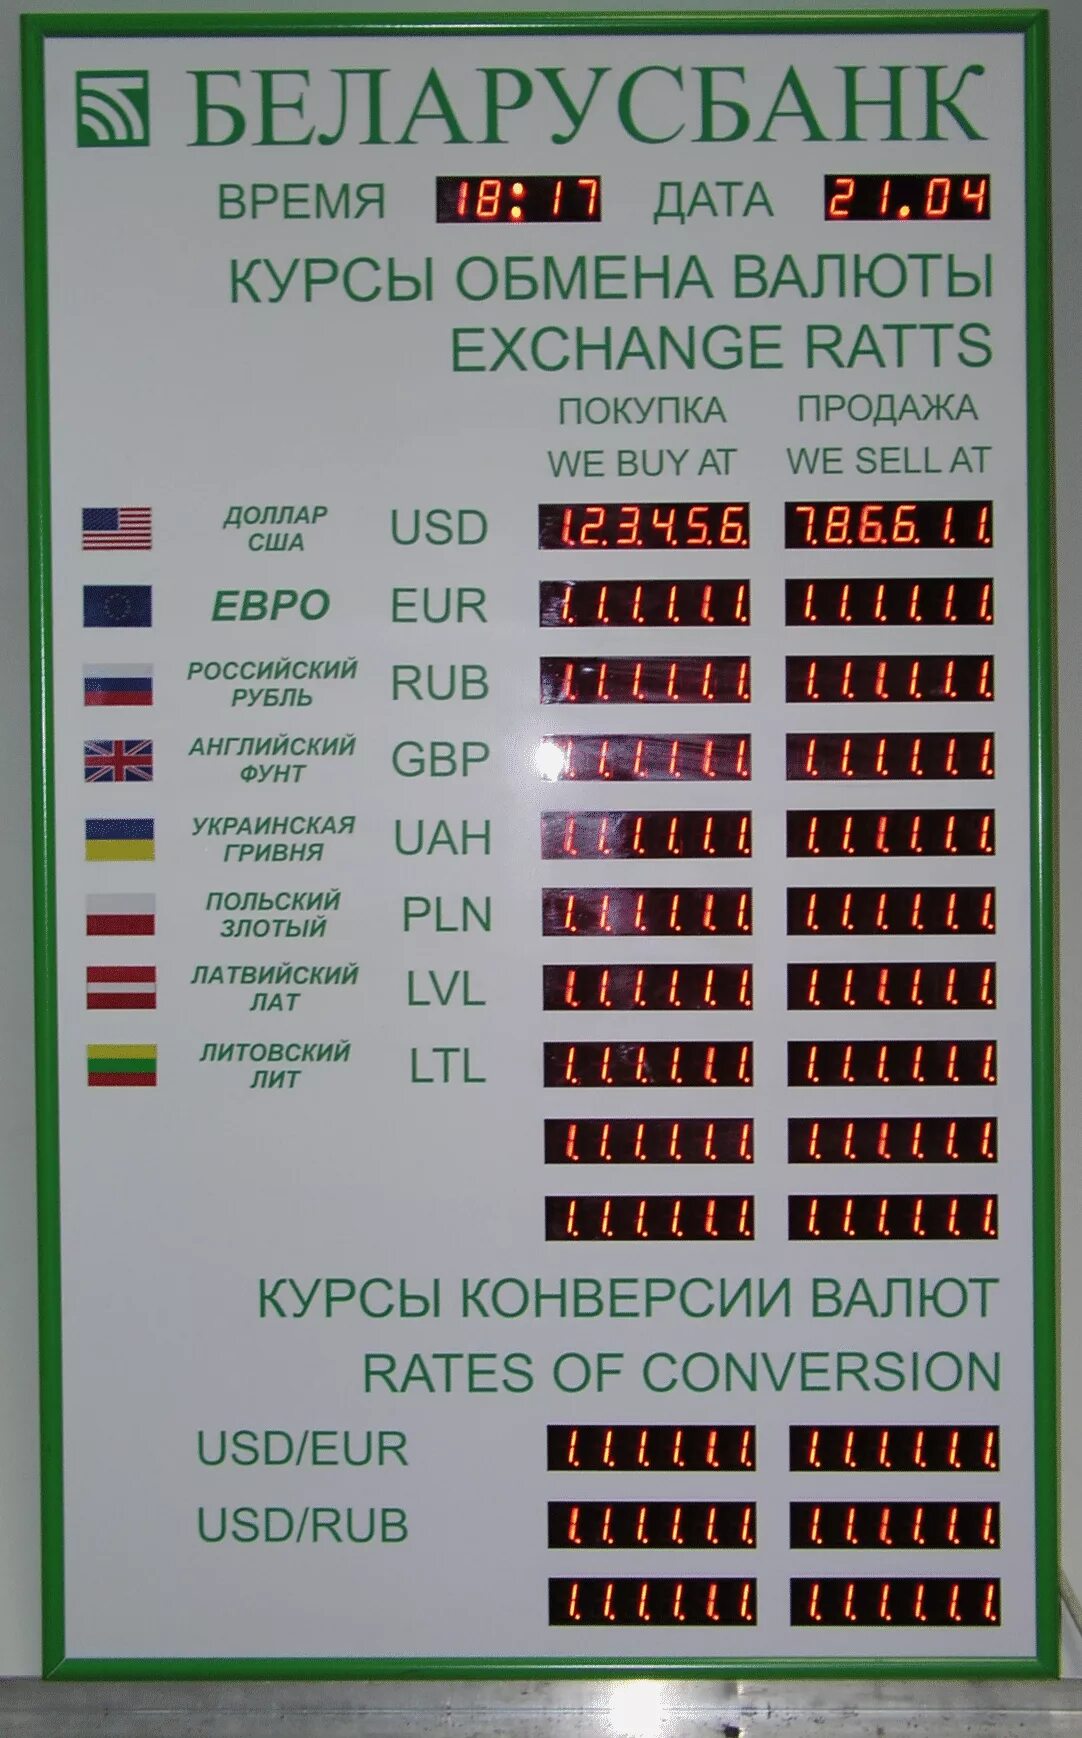 Курс в беларуси купить. Обмен валюты. Беларусбанк курсы валют. Курс обмена валют. Курсы валют в Беларуси.